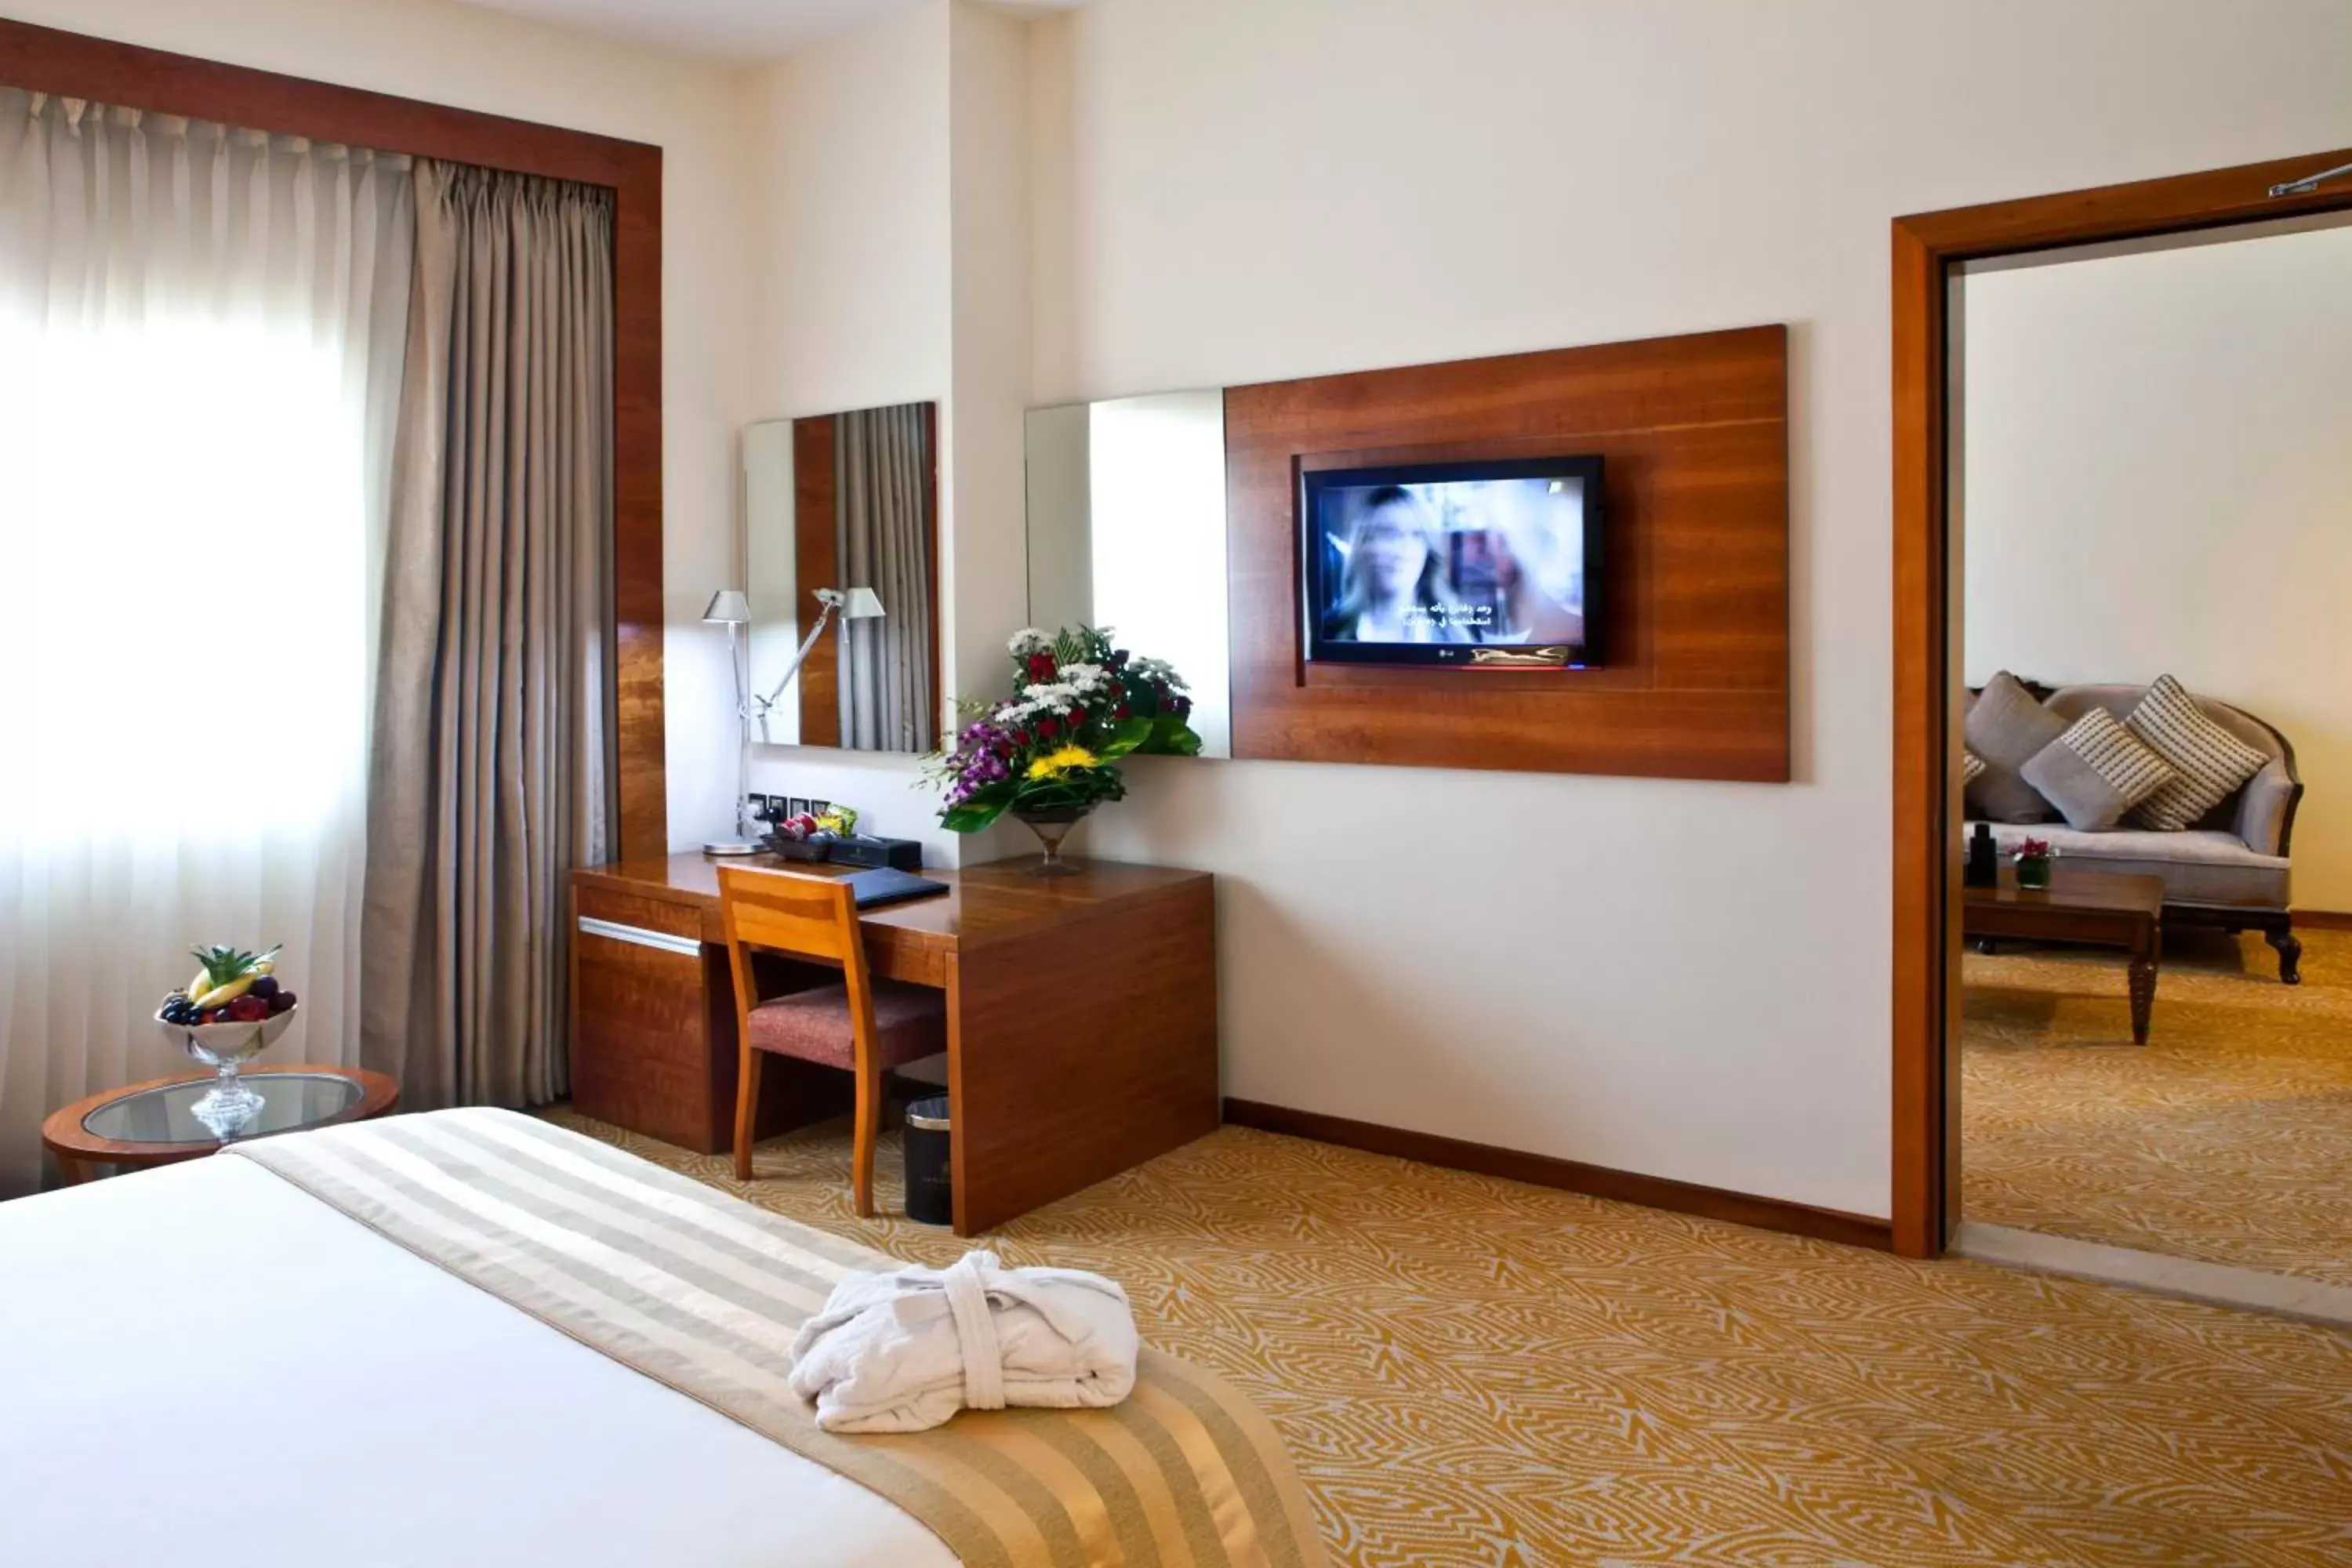 Bedroom, TV/Entertainment Center in Landmark Grand Hotel